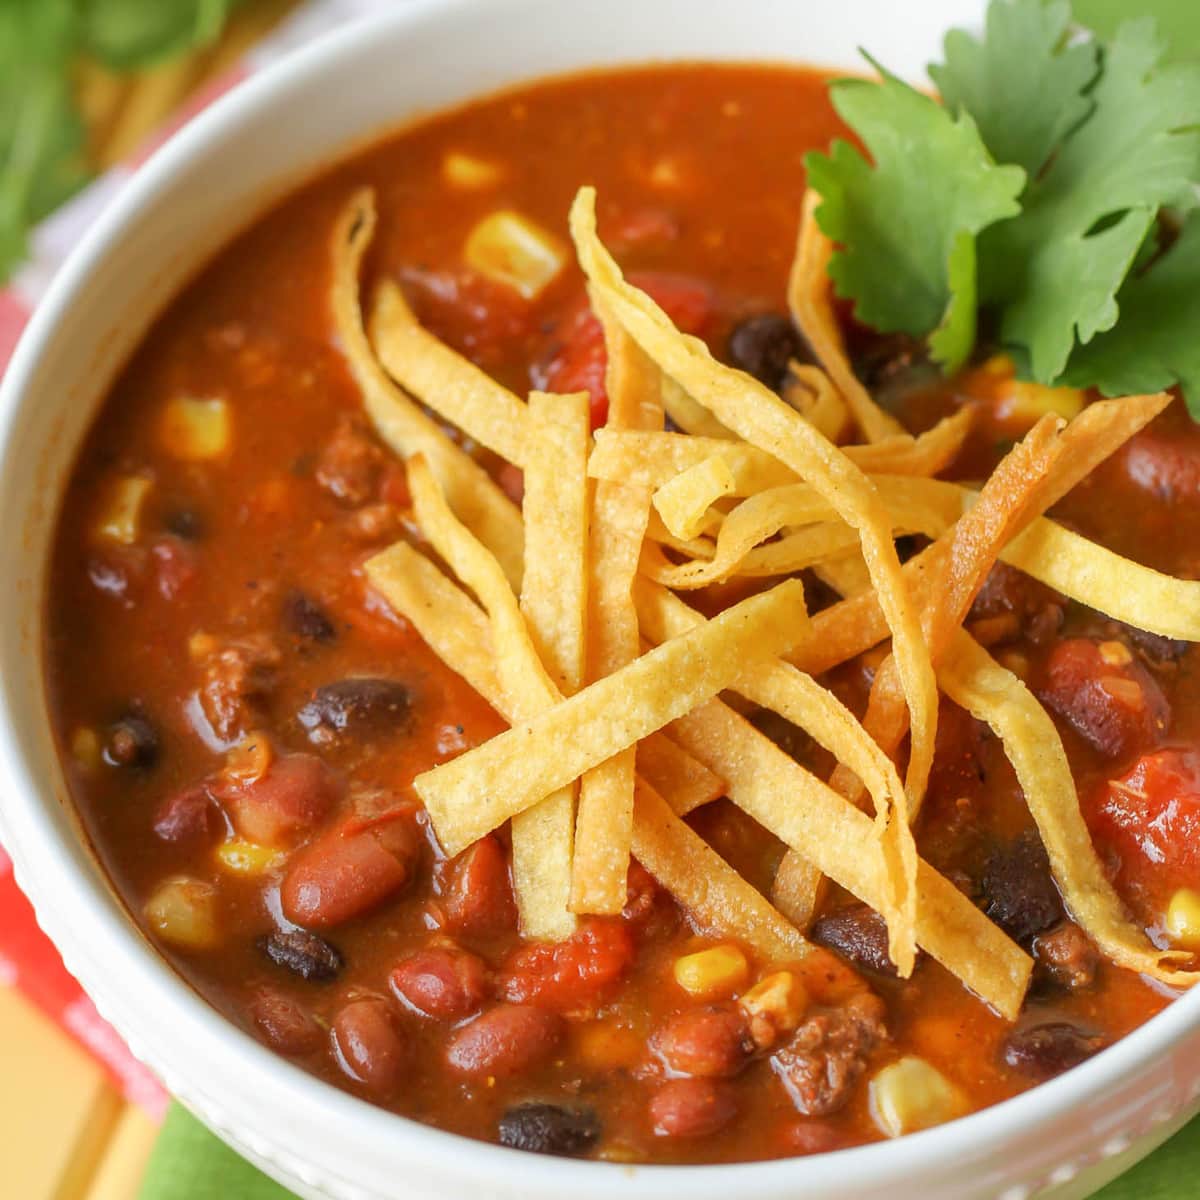 墨西哥汤食谱——碗里装满墨bob综合手机客户西哥玉米卷汤。